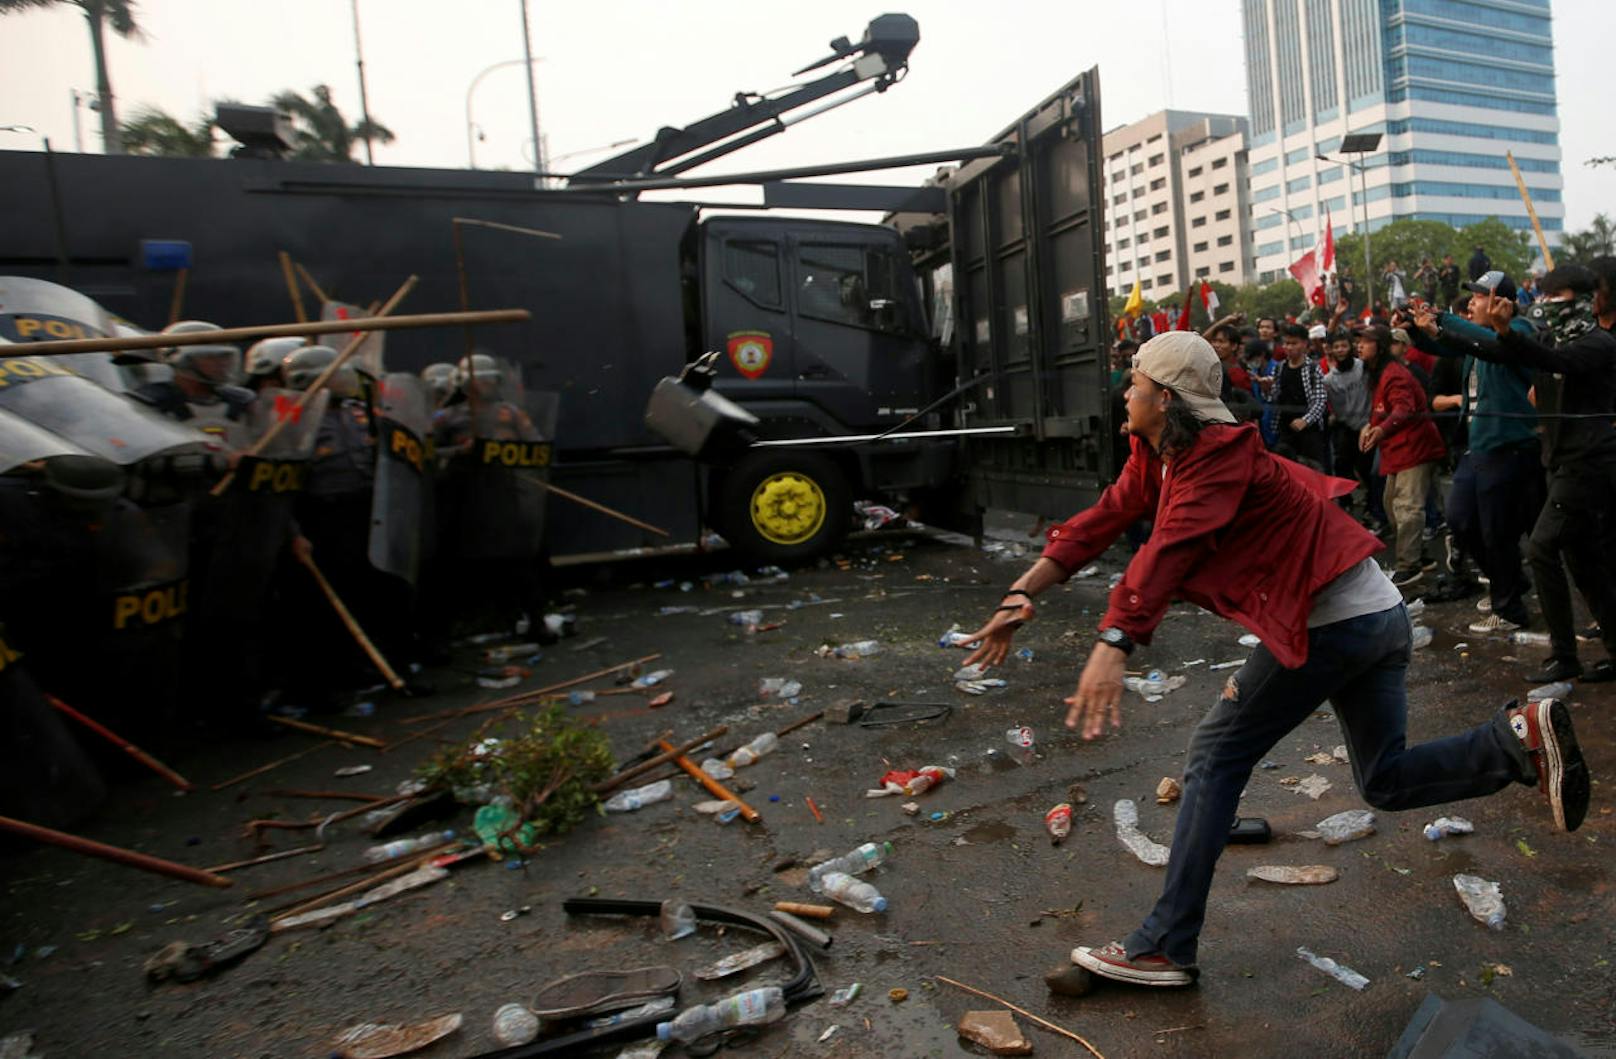 Tausende von Studenten demonstrierten in der indonesischen Hauptstadt Jakarta gegen die geplante Verschärfungen des Strafrechts. Diese orientieren sich zum Teil an der islamischen Scharia und sehen schwere Strafen unter anderem für Ehebruch und "Hexerei" vor. Die Polizei ging mit gepanzerten Fahrzeugen, Wasserwerfern und Tränengas gegen die Demonstranten vor.